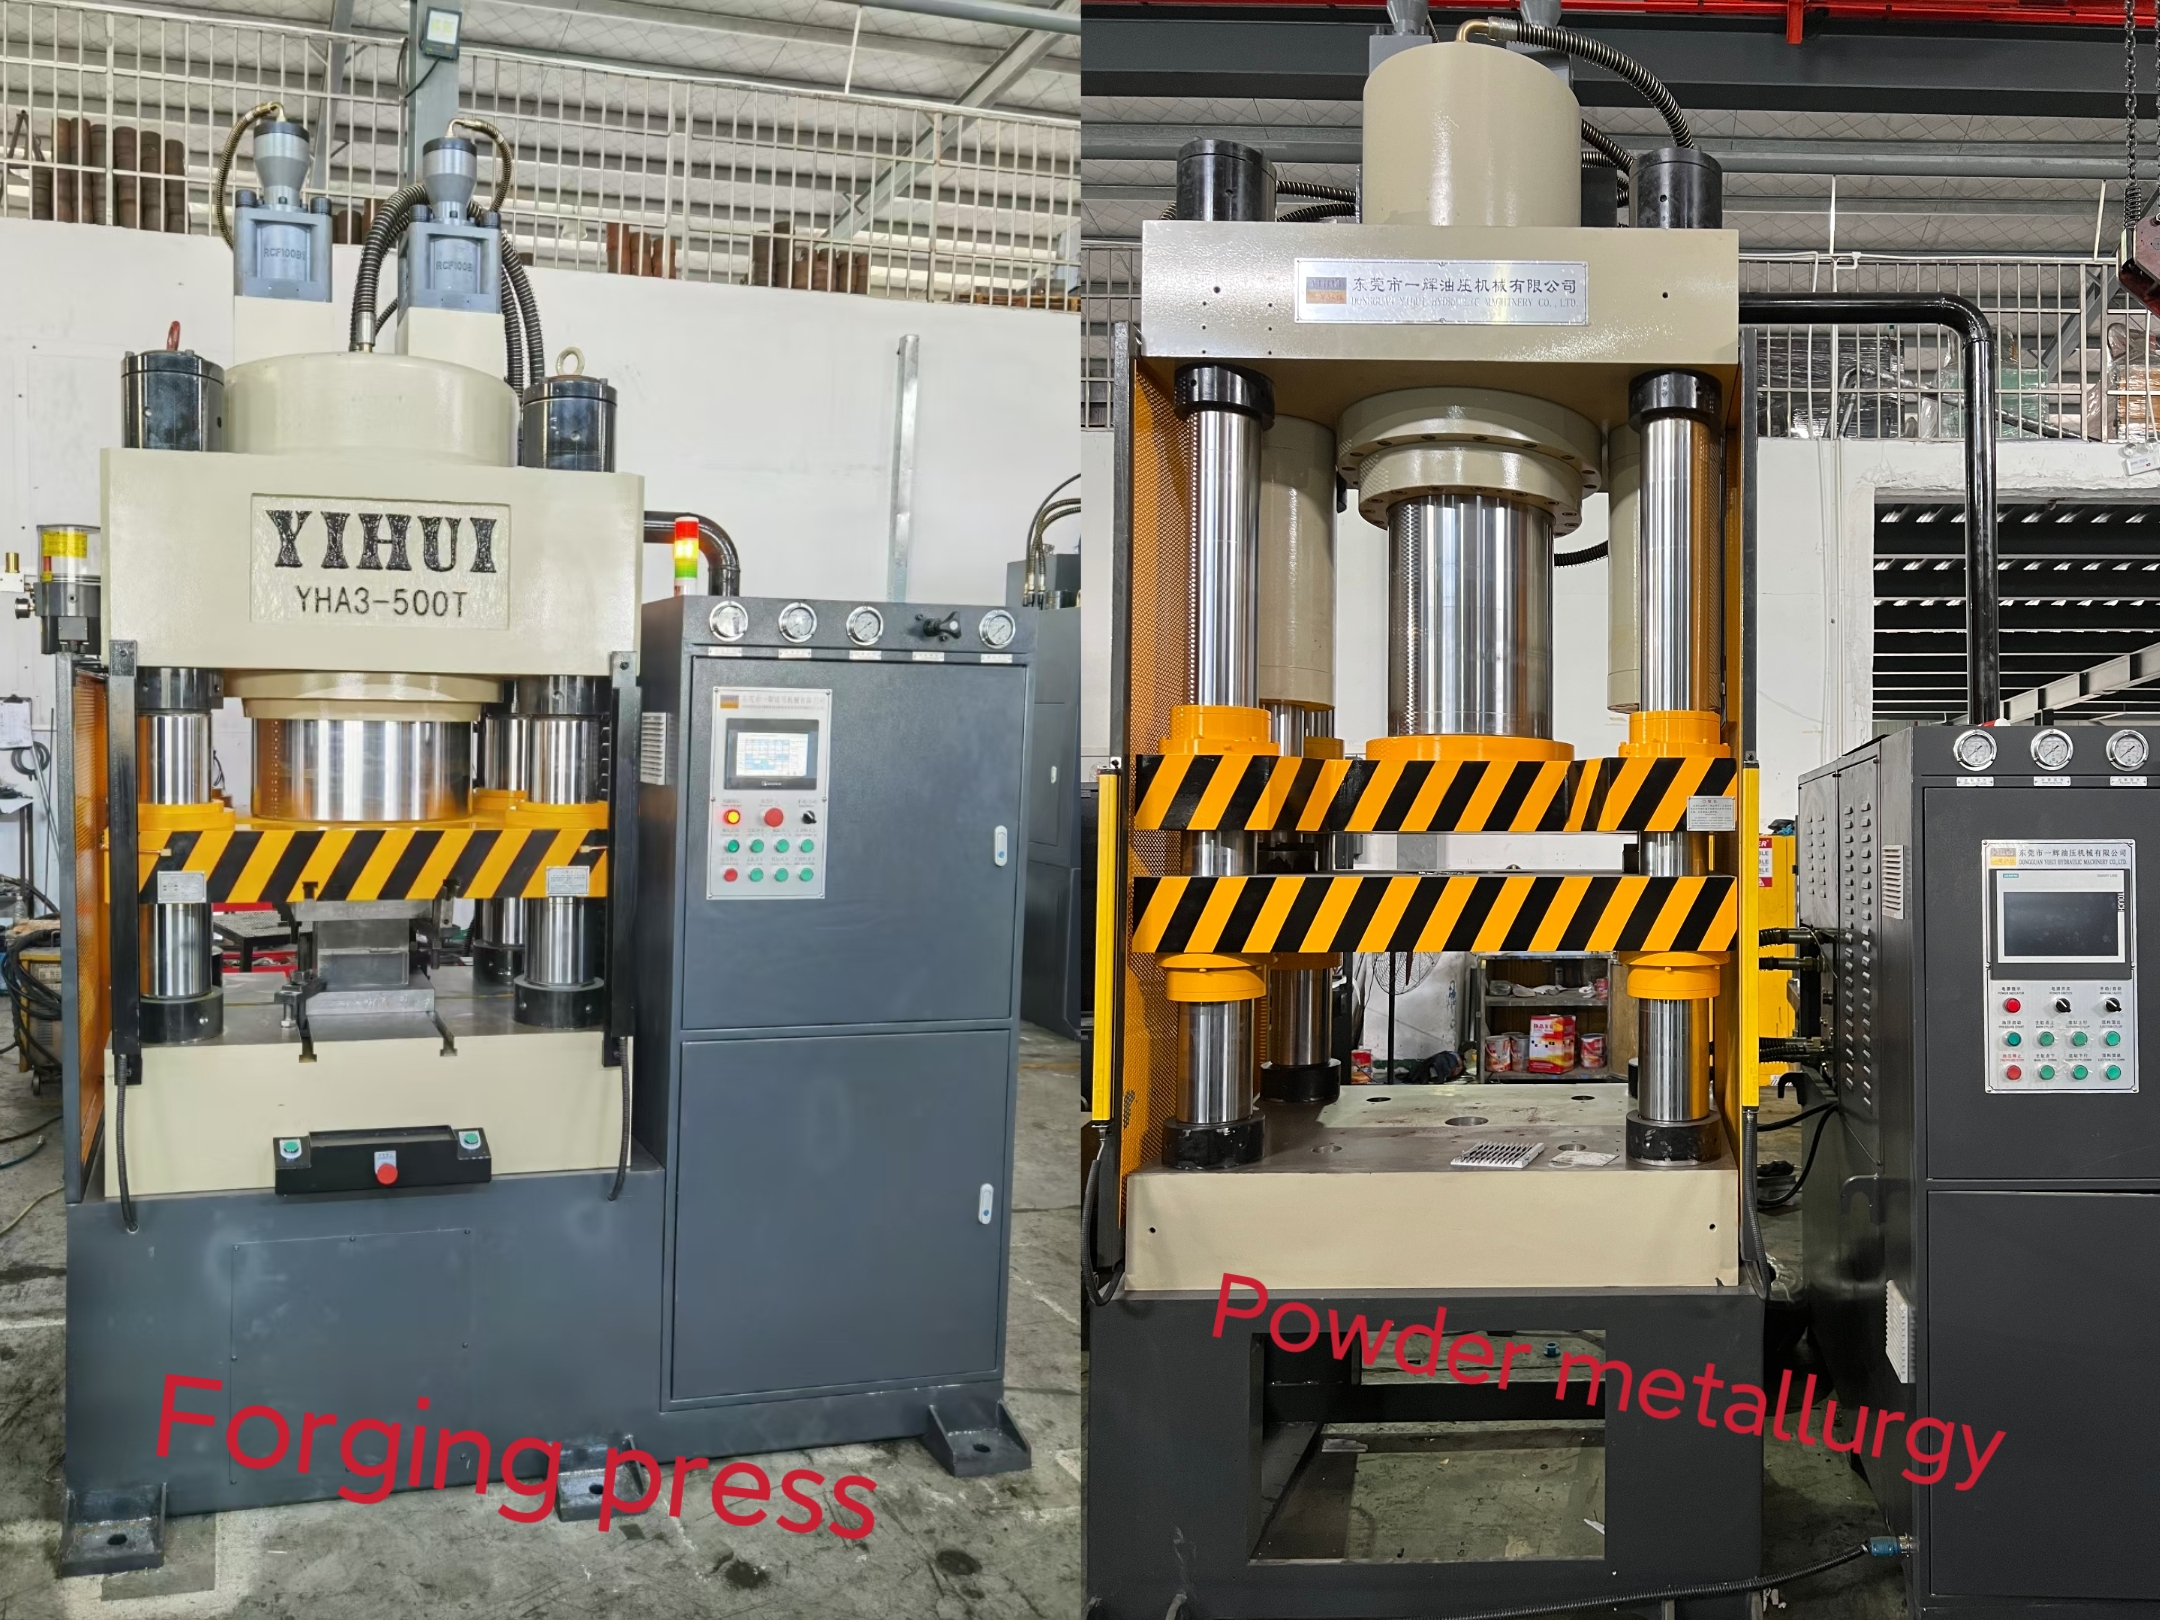 Pulvermetallurgie Press a Schmiedepress